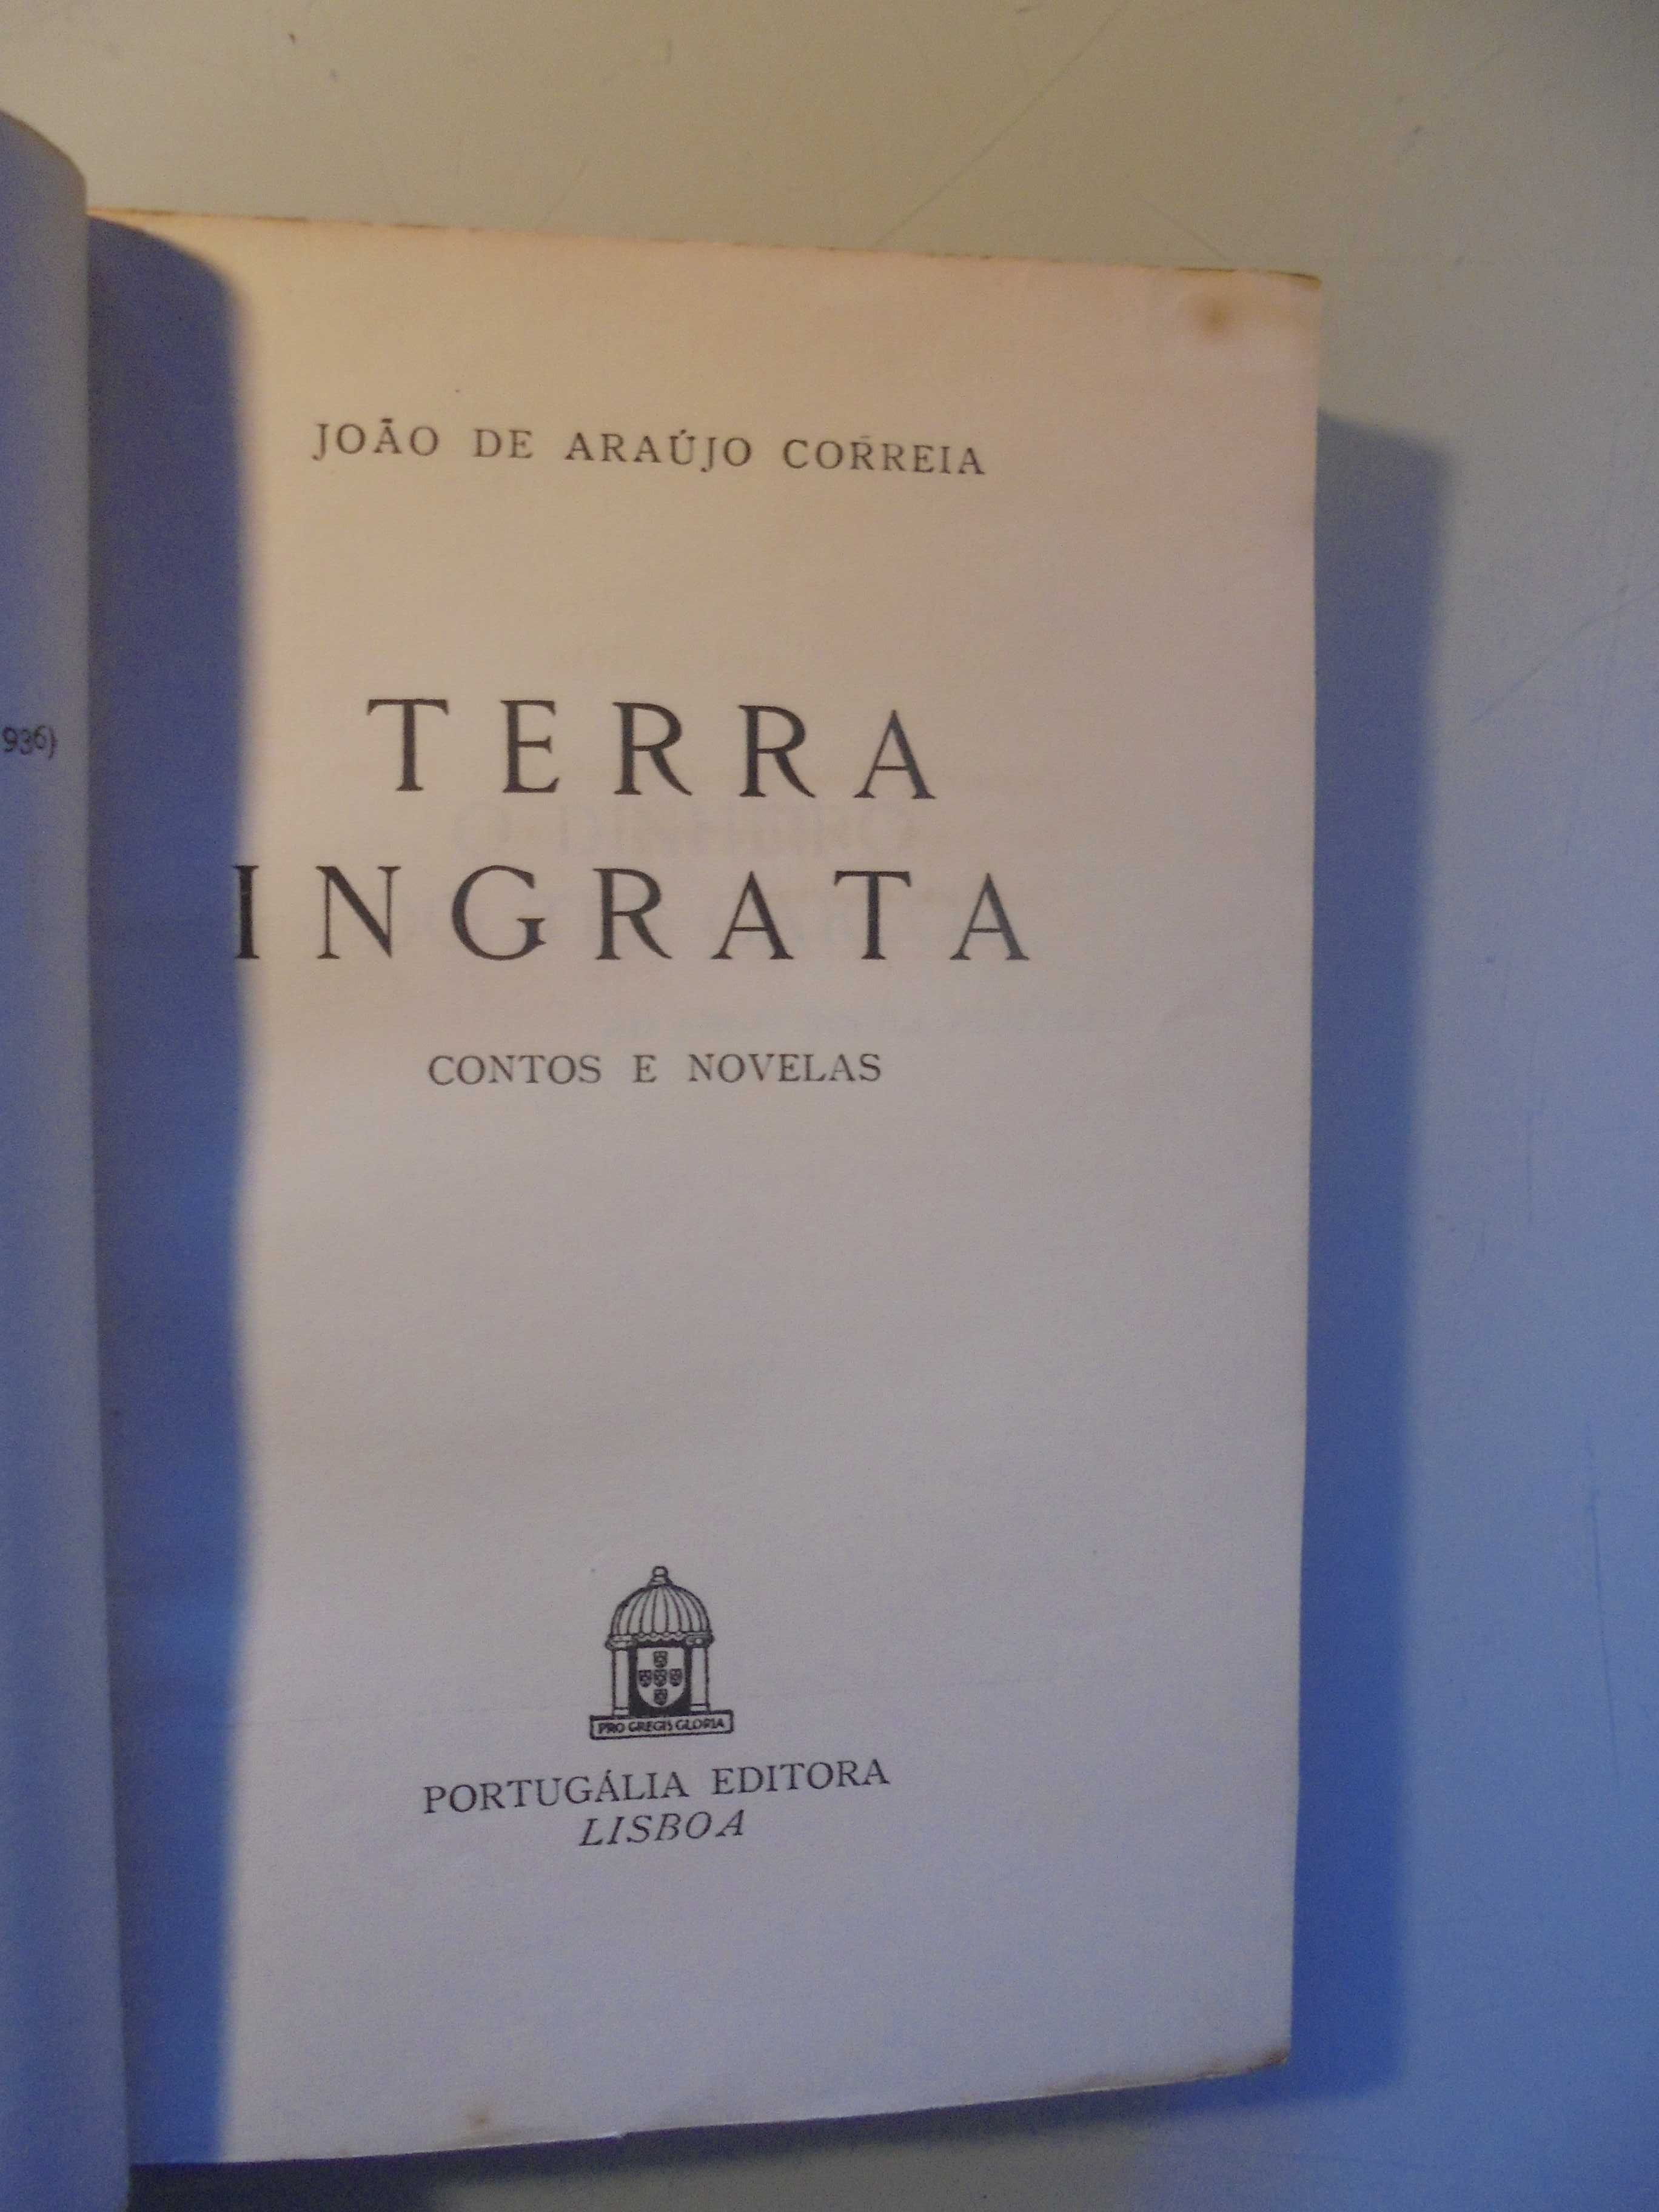 Correia (João de Araújo);Terra Ingrata;Portugália,1ª Edição,1946,